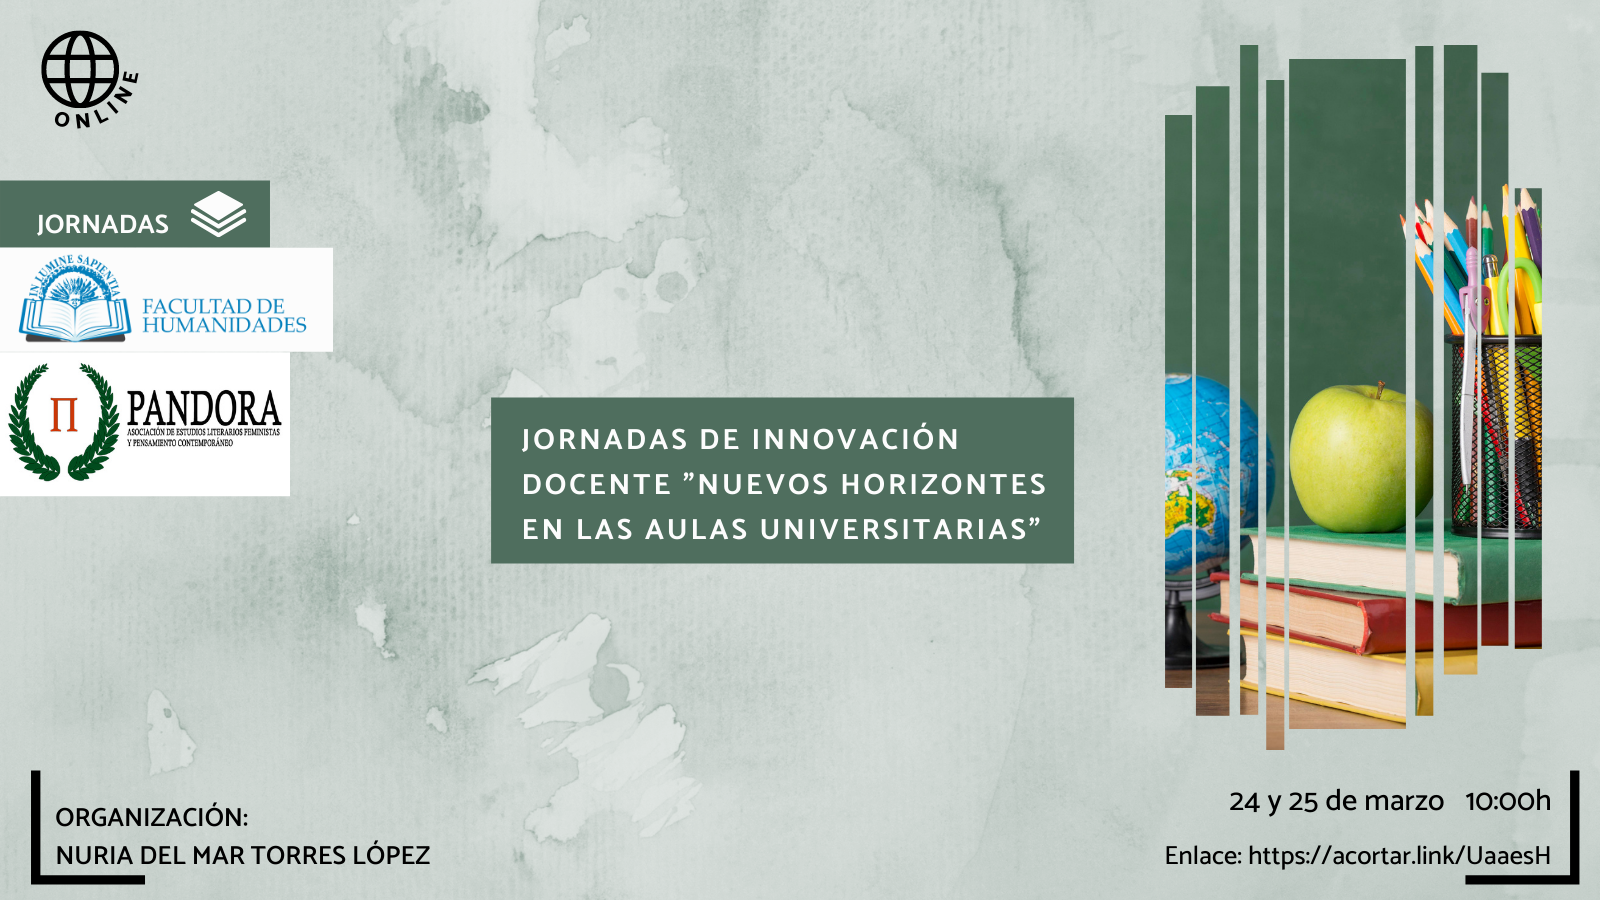 La Facultad de Humanidades , la Asociación Pandora y Nuria del Mar Torres López organizan la actividad titulada «Jornadas de innovación docente "Nuevos horizontes en las aulas universitarias"».